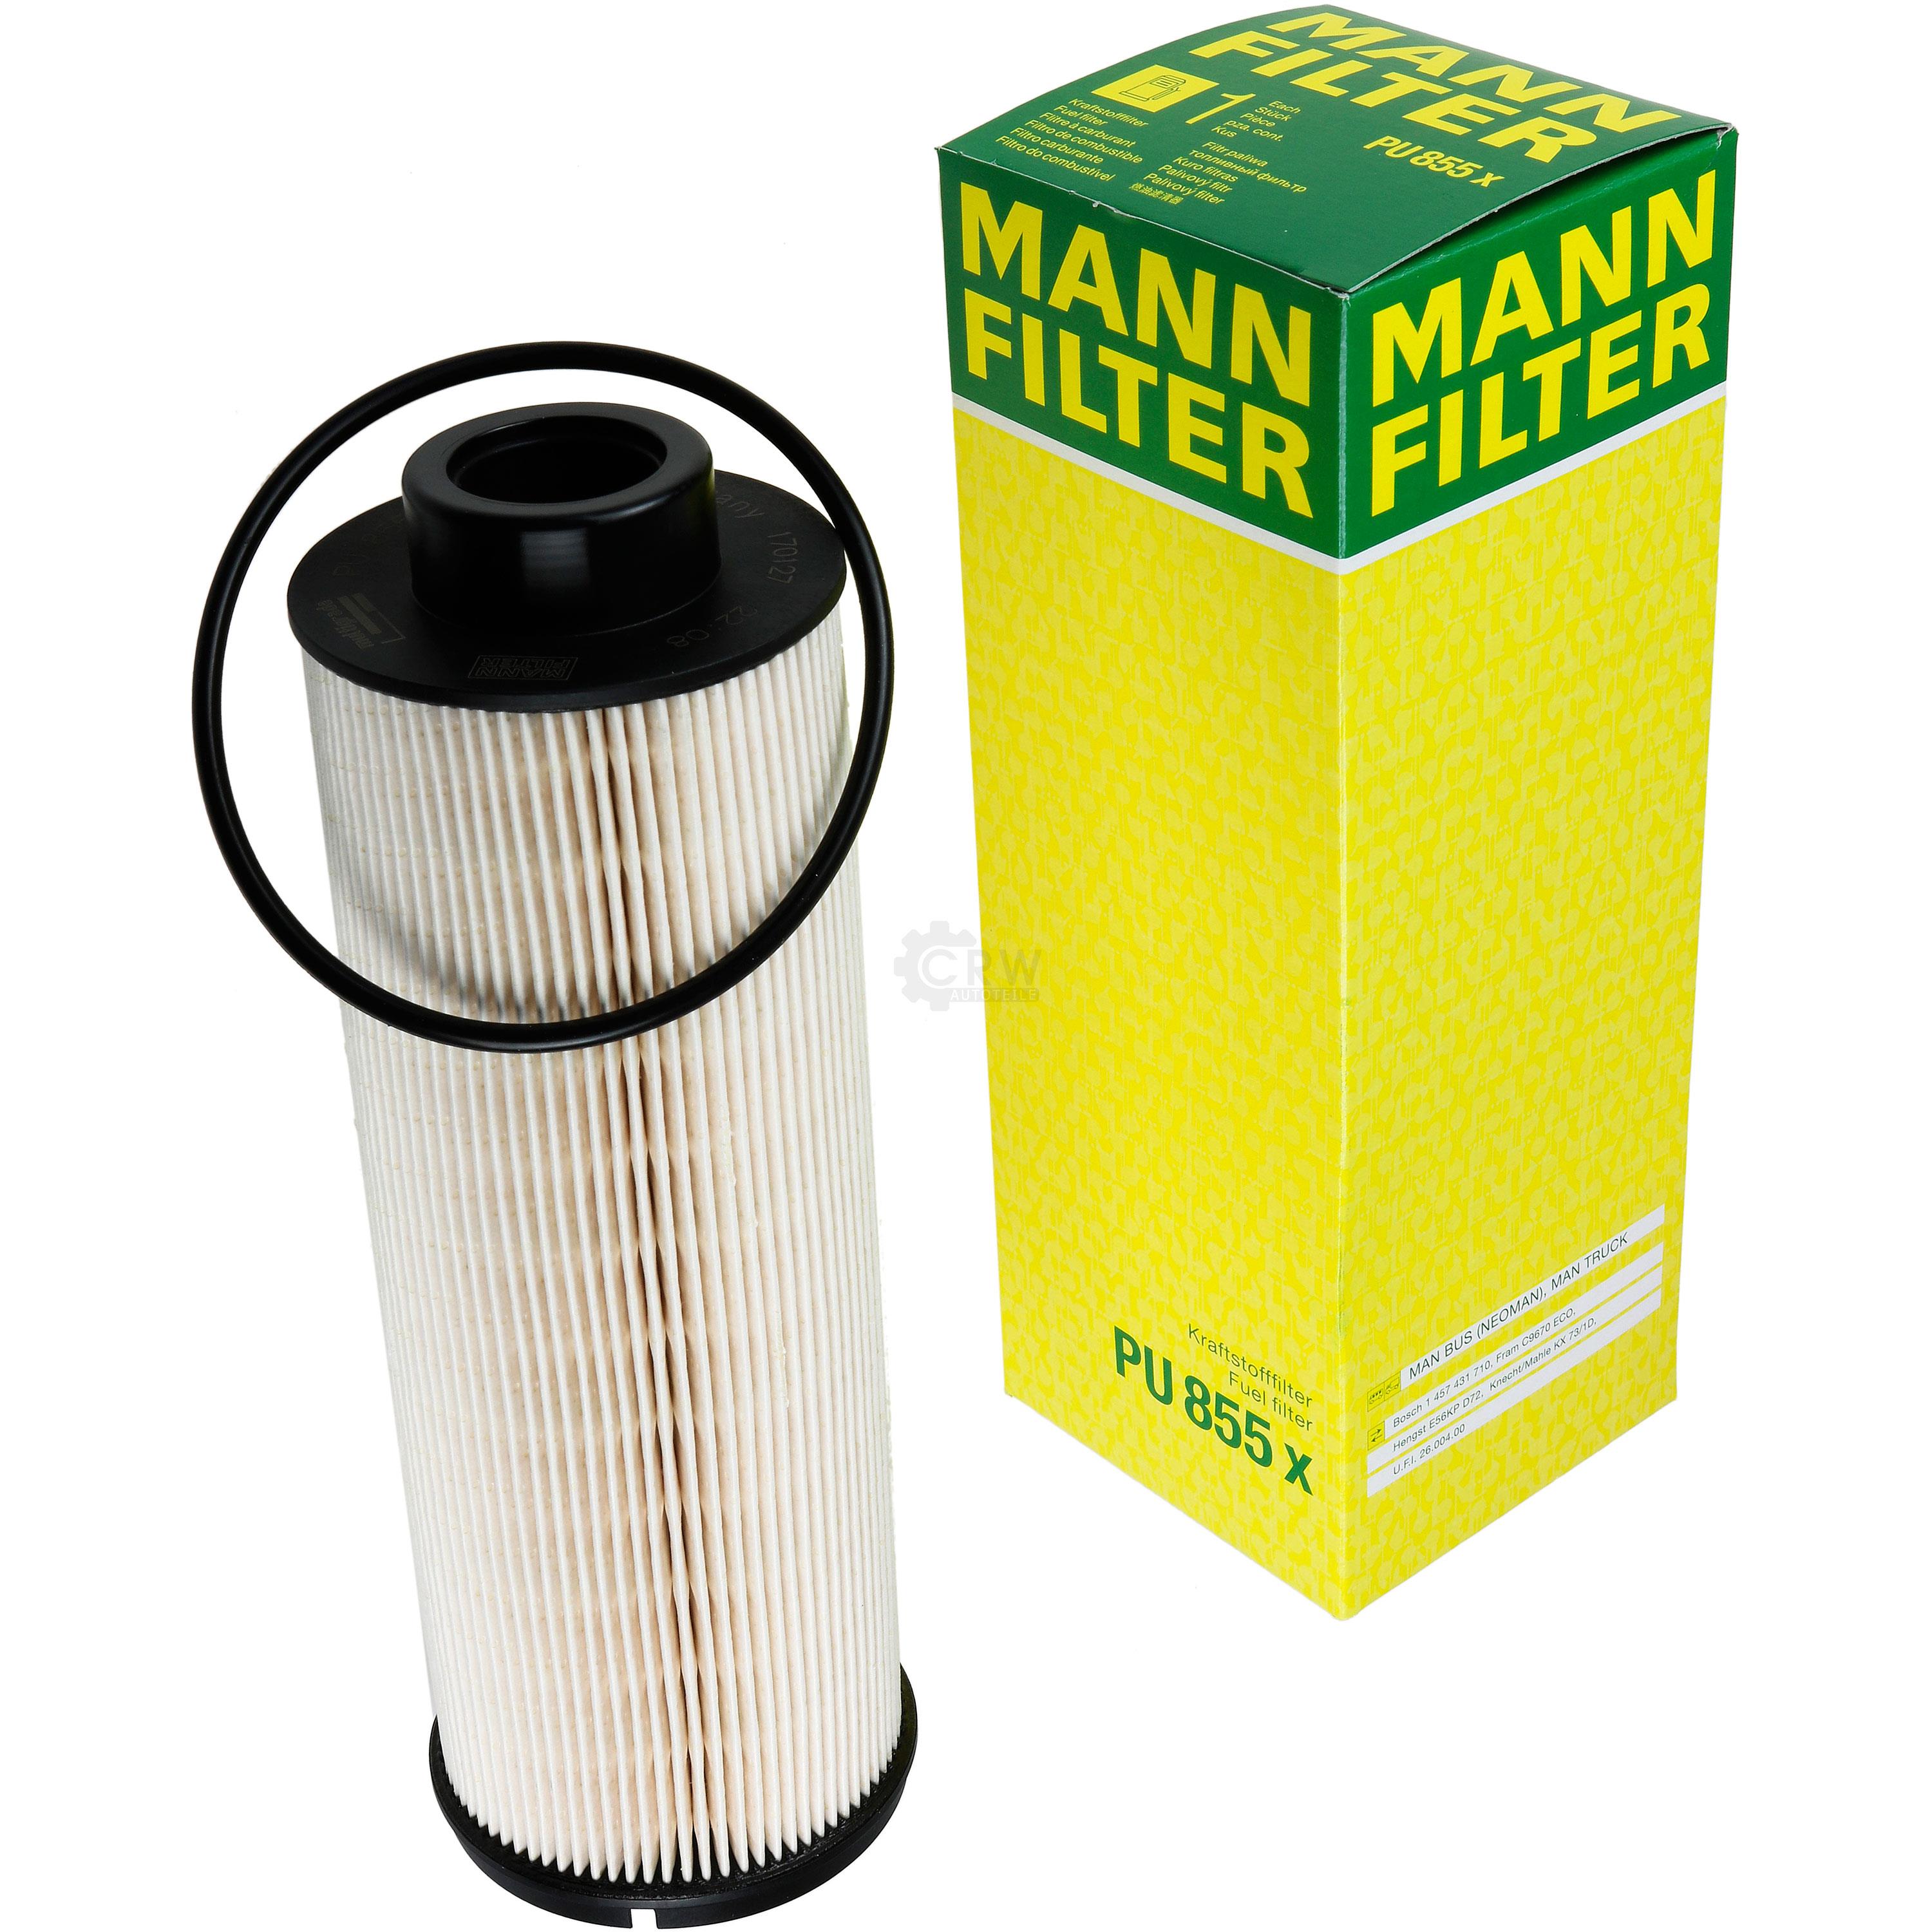 MANN-FILTER Kraftstofffilter PU 855 x Fuel Filter